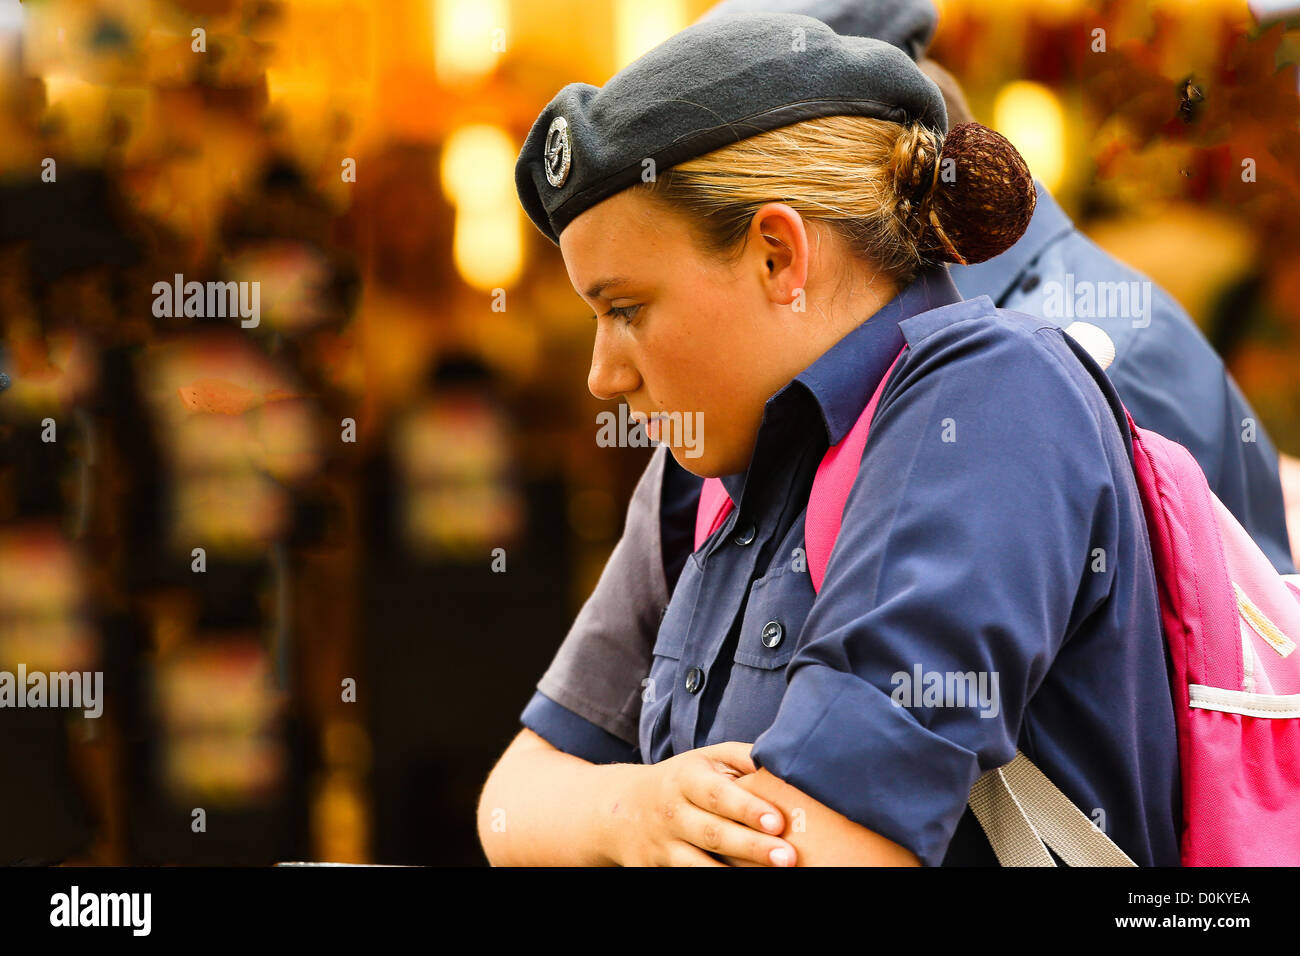 Armee Mädchen konzentriert Stockfoto